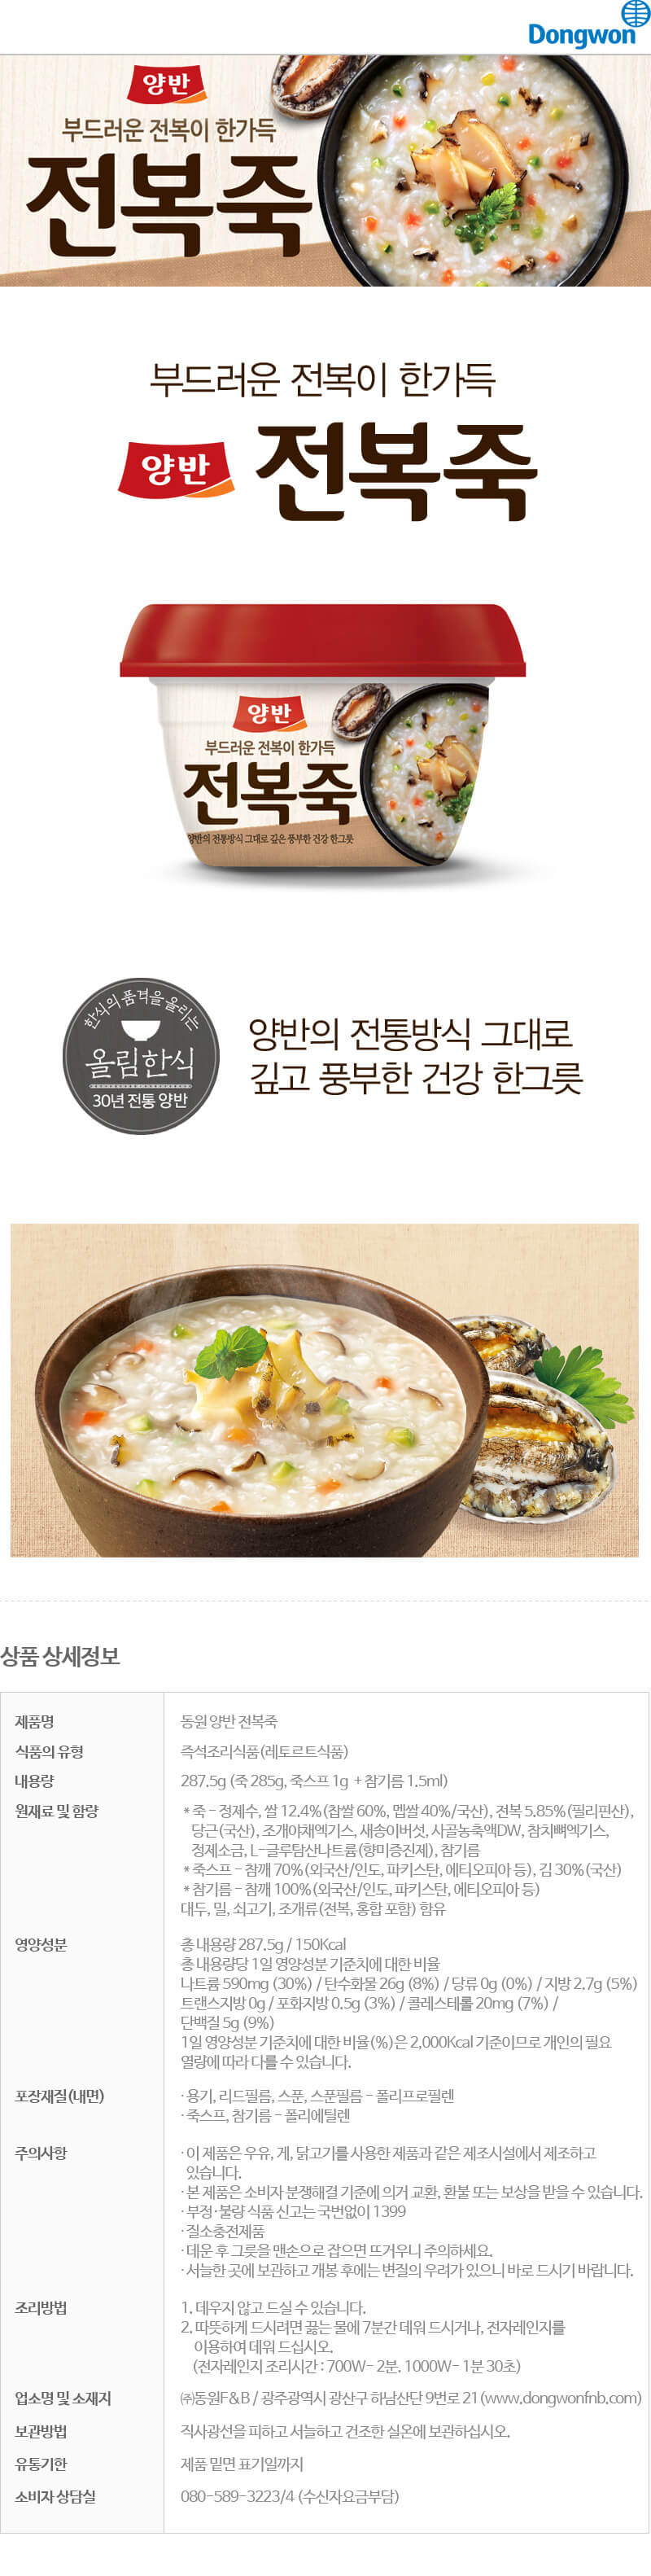 韓國食品-[동원] 양반 전복죽 287.5g